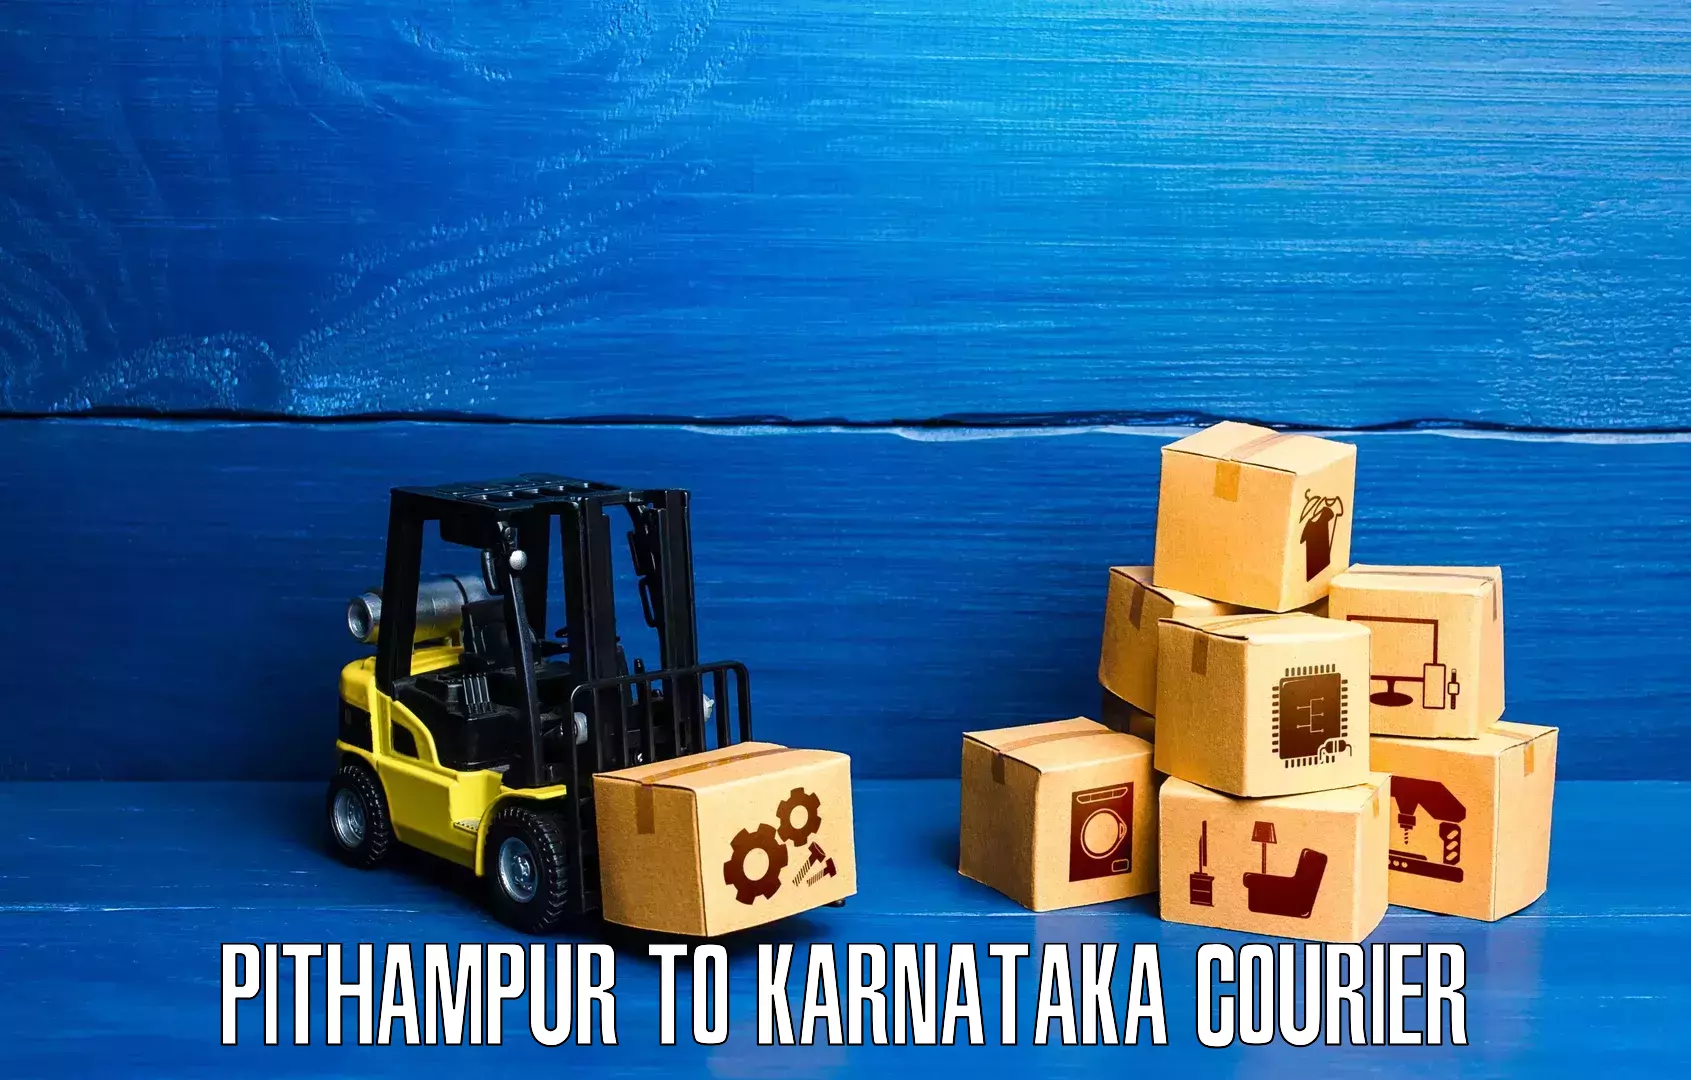 Global delivery options Pithampur to Karnataka